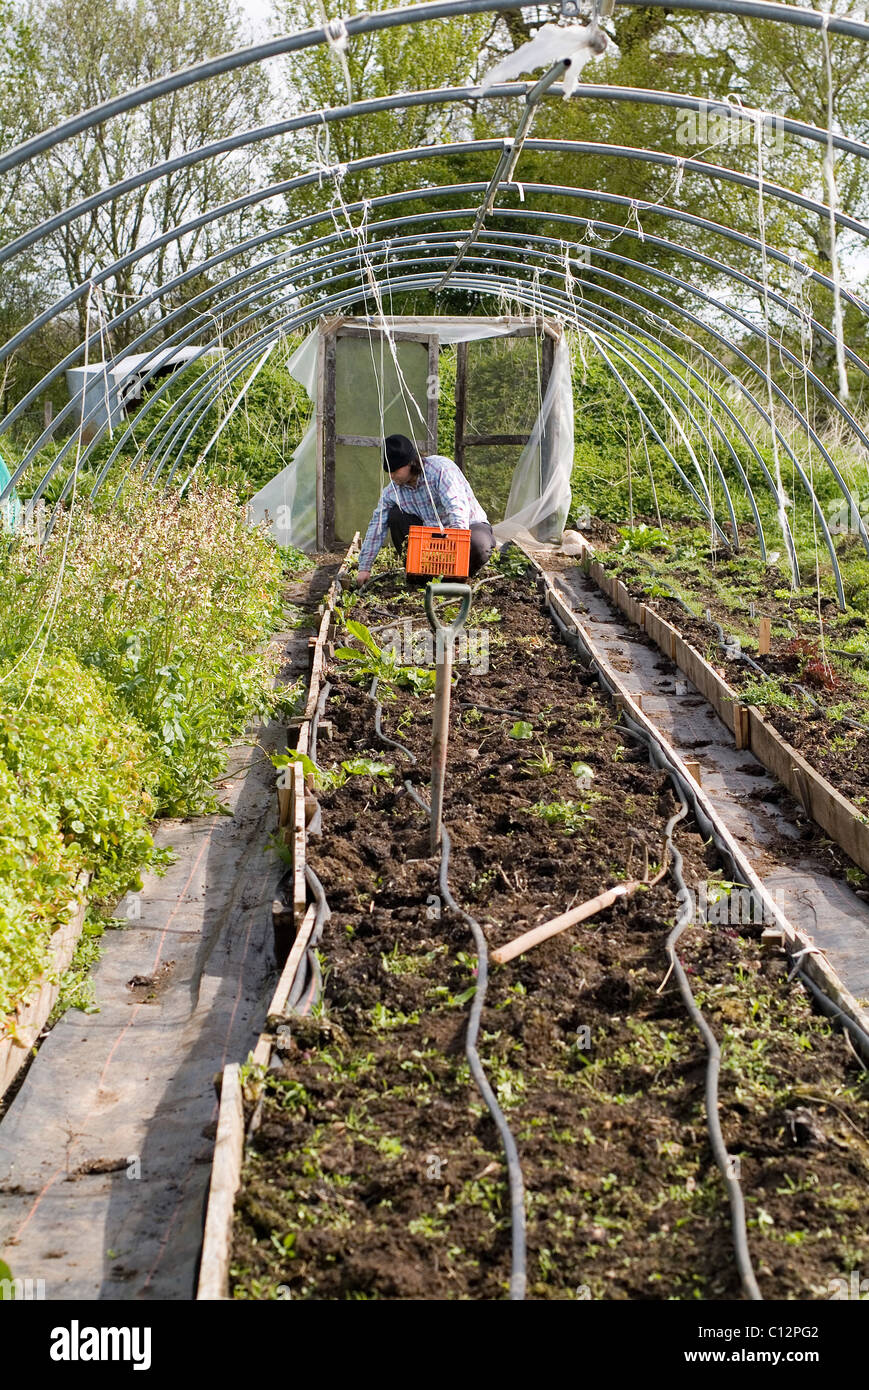 L'activité jardinage capturés à Garden Organic, Ryton, Warwickshire, UK Banque D'Images